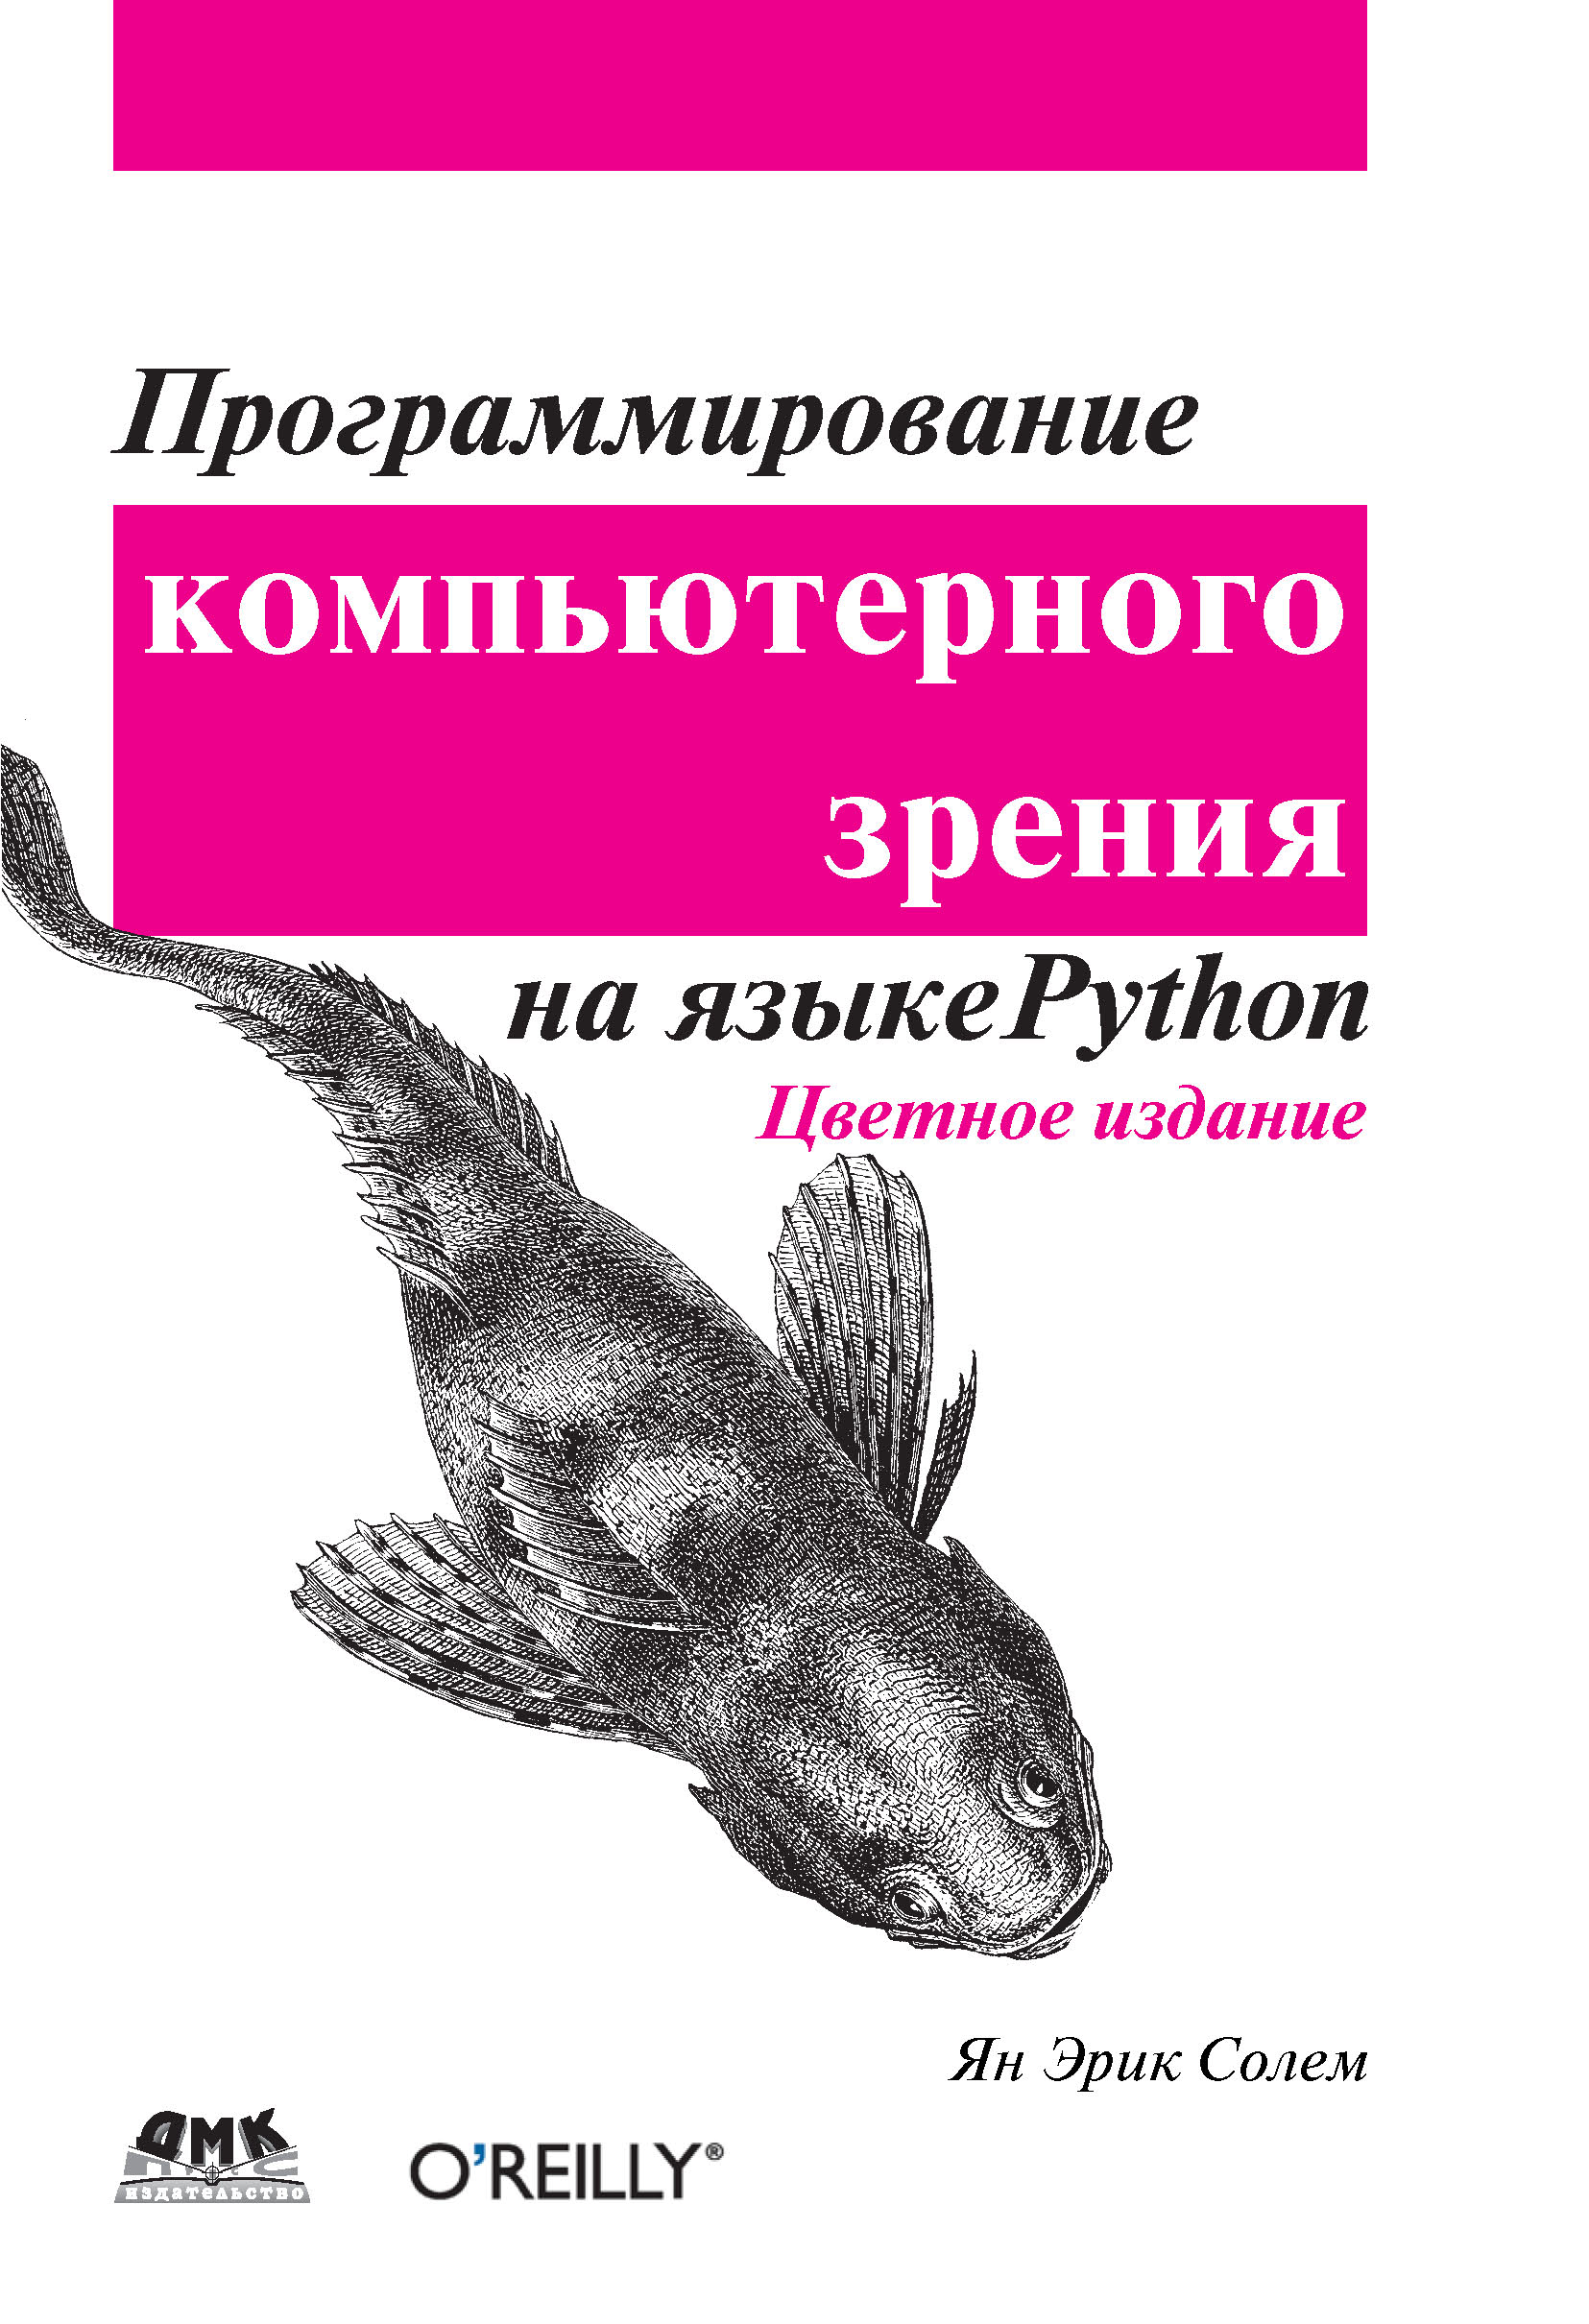 Python купить книгу. Программирование компьютерного зрения на языке Python. Книги по программированию. Книги про программирование. Программирование на питон книга.